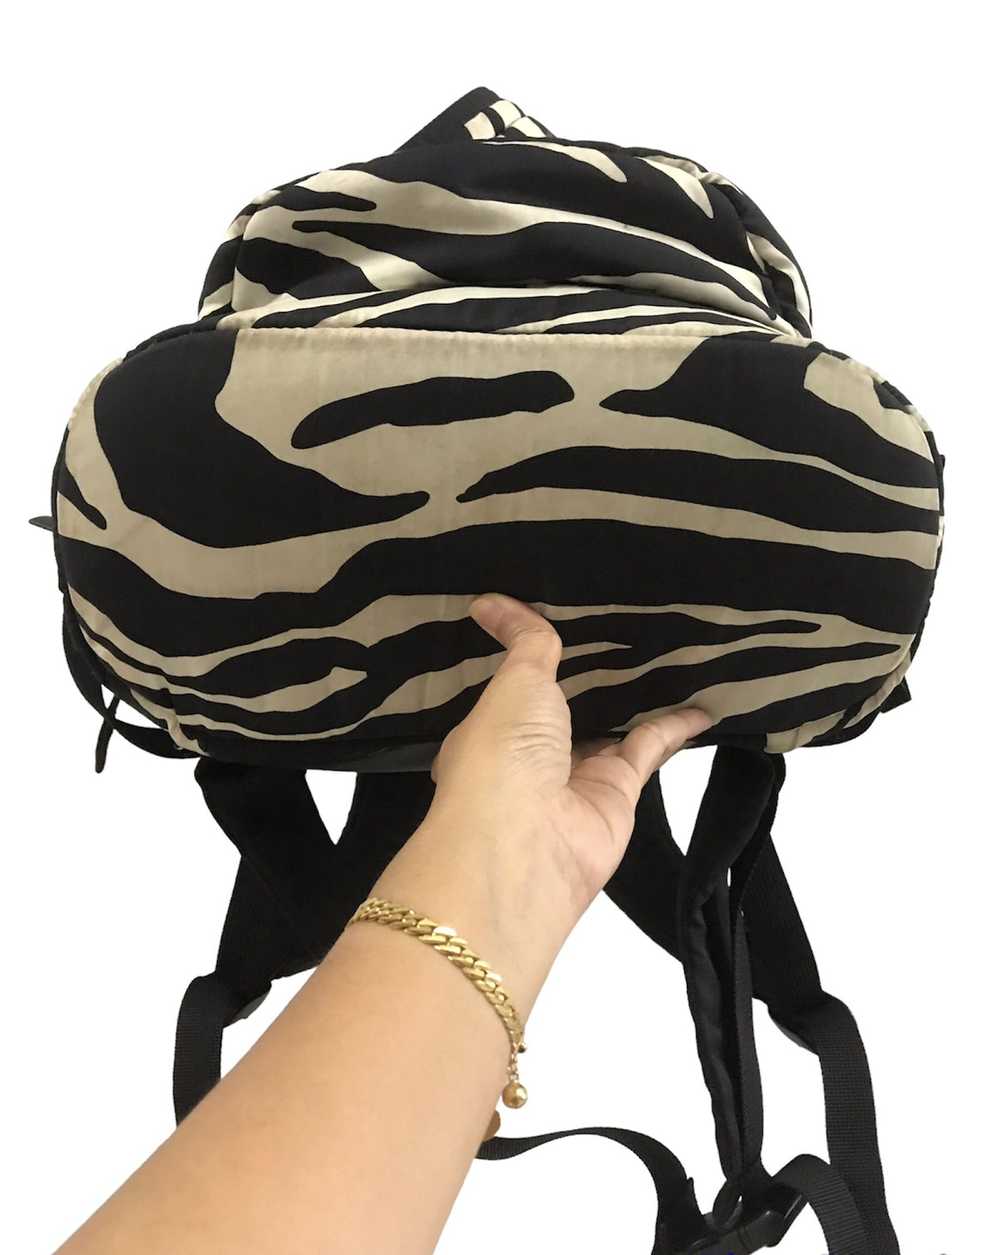 Porter Porter-Zebra Rucksack backpack - image 5